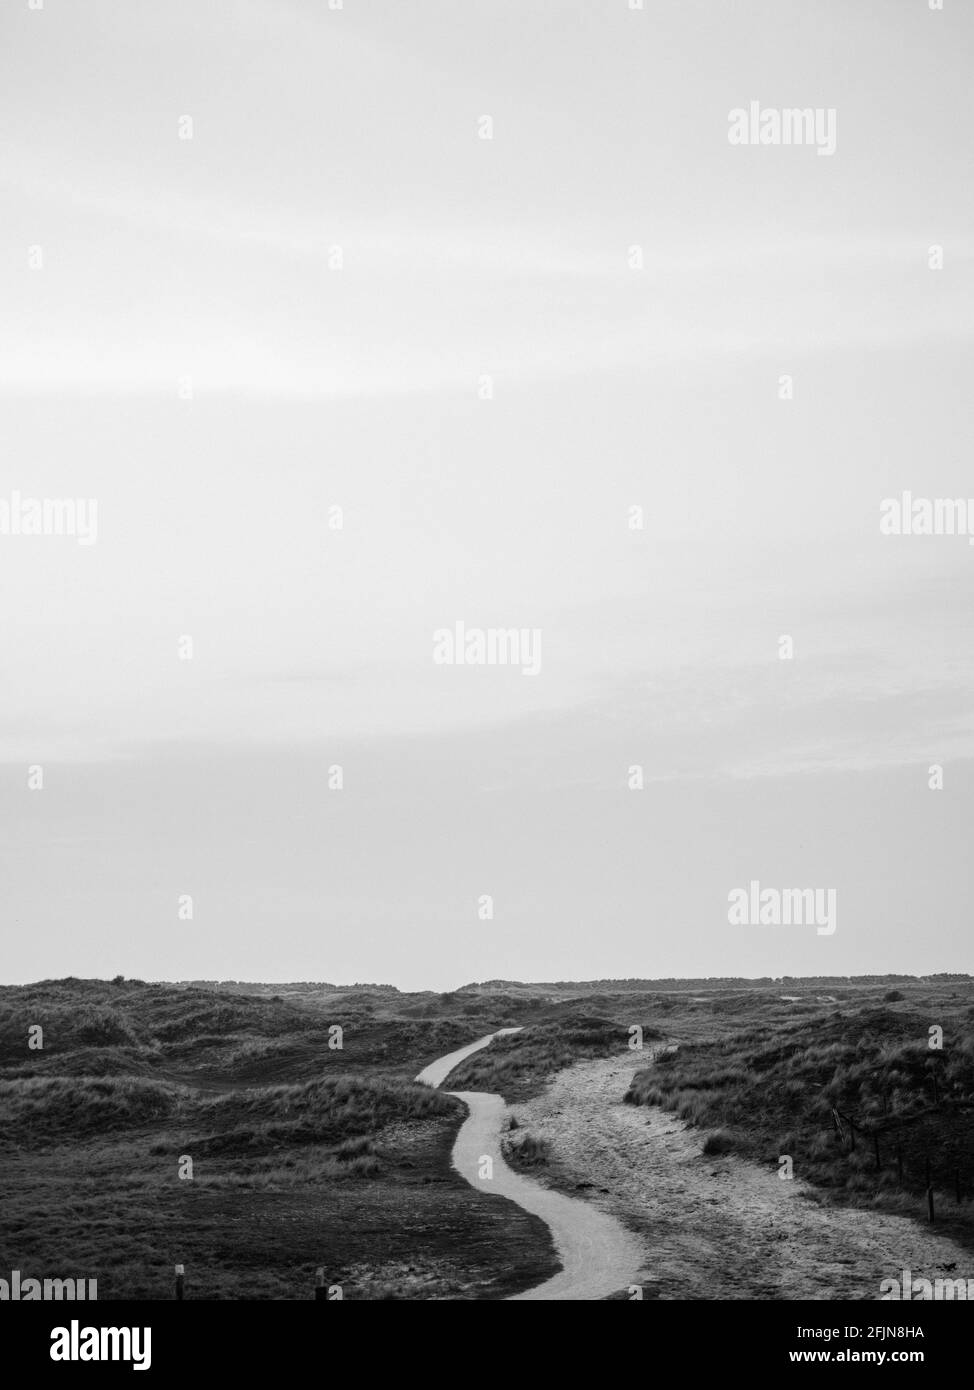 Paesaggio di dune olandesi in bianco e nero su Ameland, una delle isole Wadden nel nord dei Paesi Bassi Foto Stock